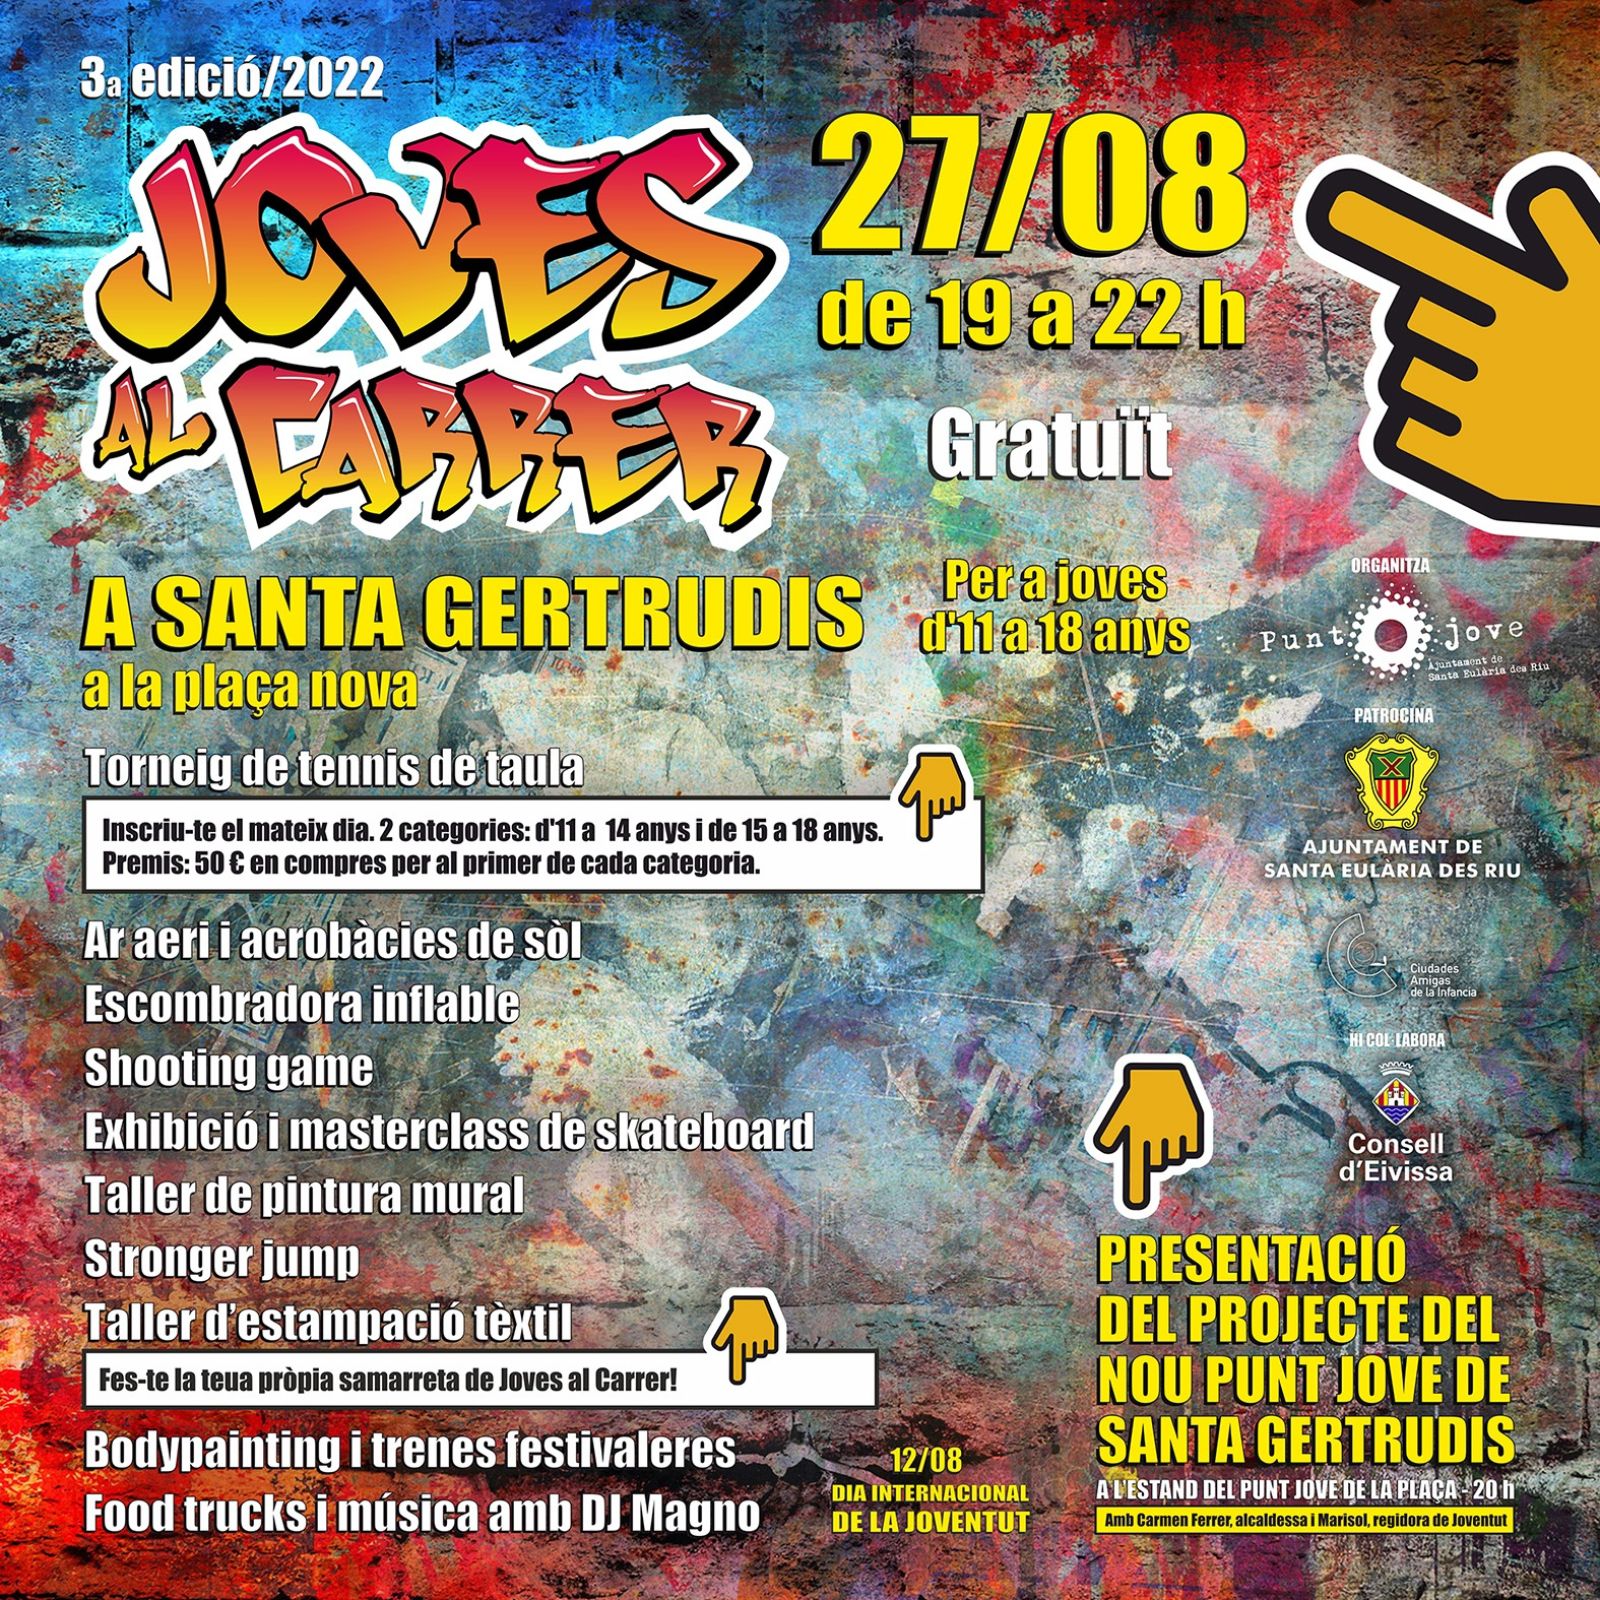 ‘Joves al Carrer’ lleva este sábado a Santa Gertrudis sus talleres de acrobacias, pintura mural y ‘skate’